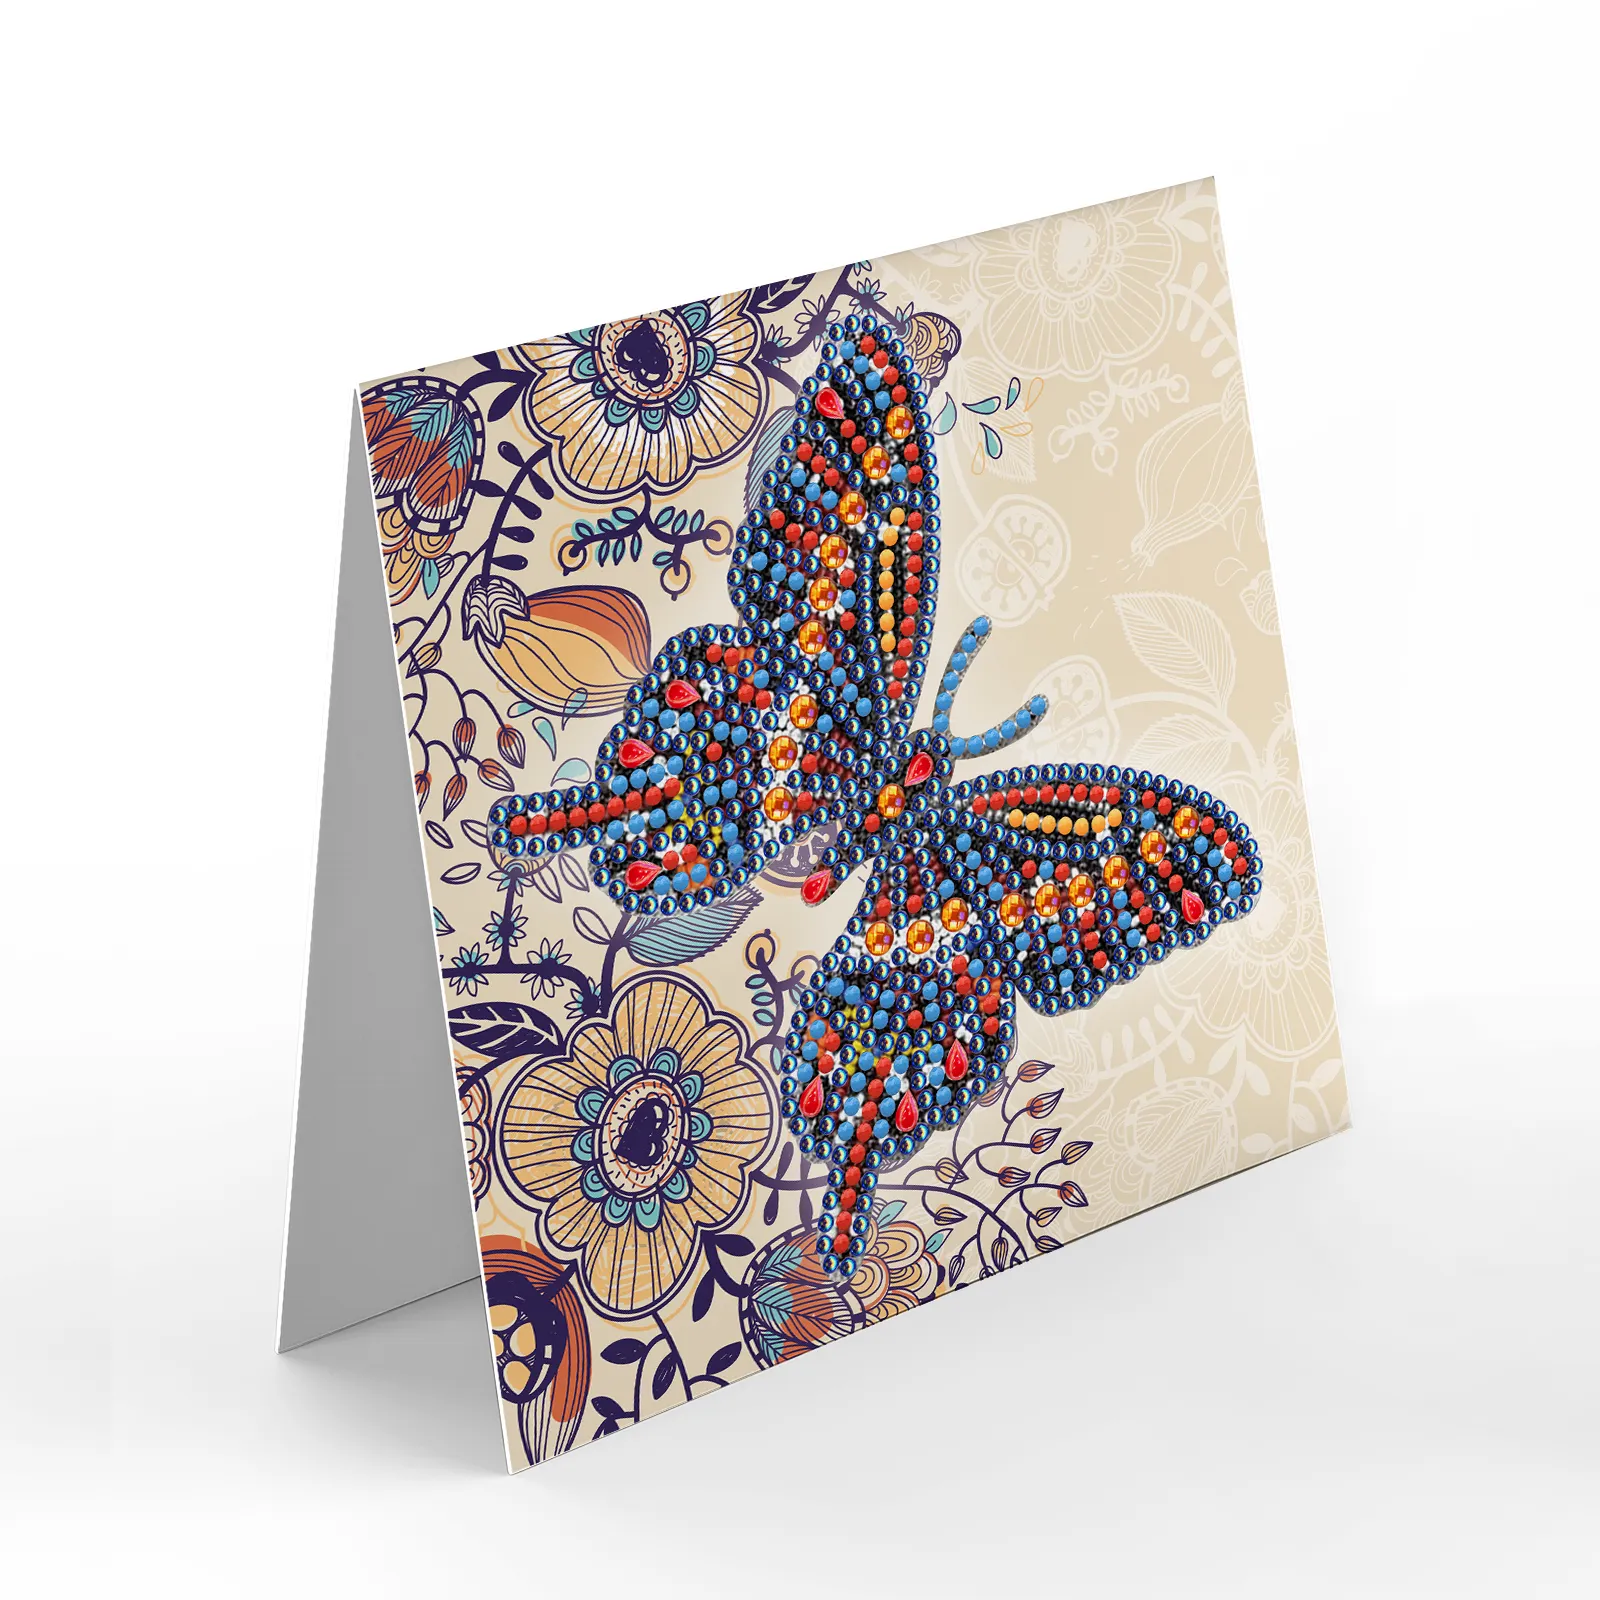 Lukisan berlian alat tulis kustom DIY warna-warni seri kupu-kupu berlian kartu ucapan indah buatan sendiri kartu